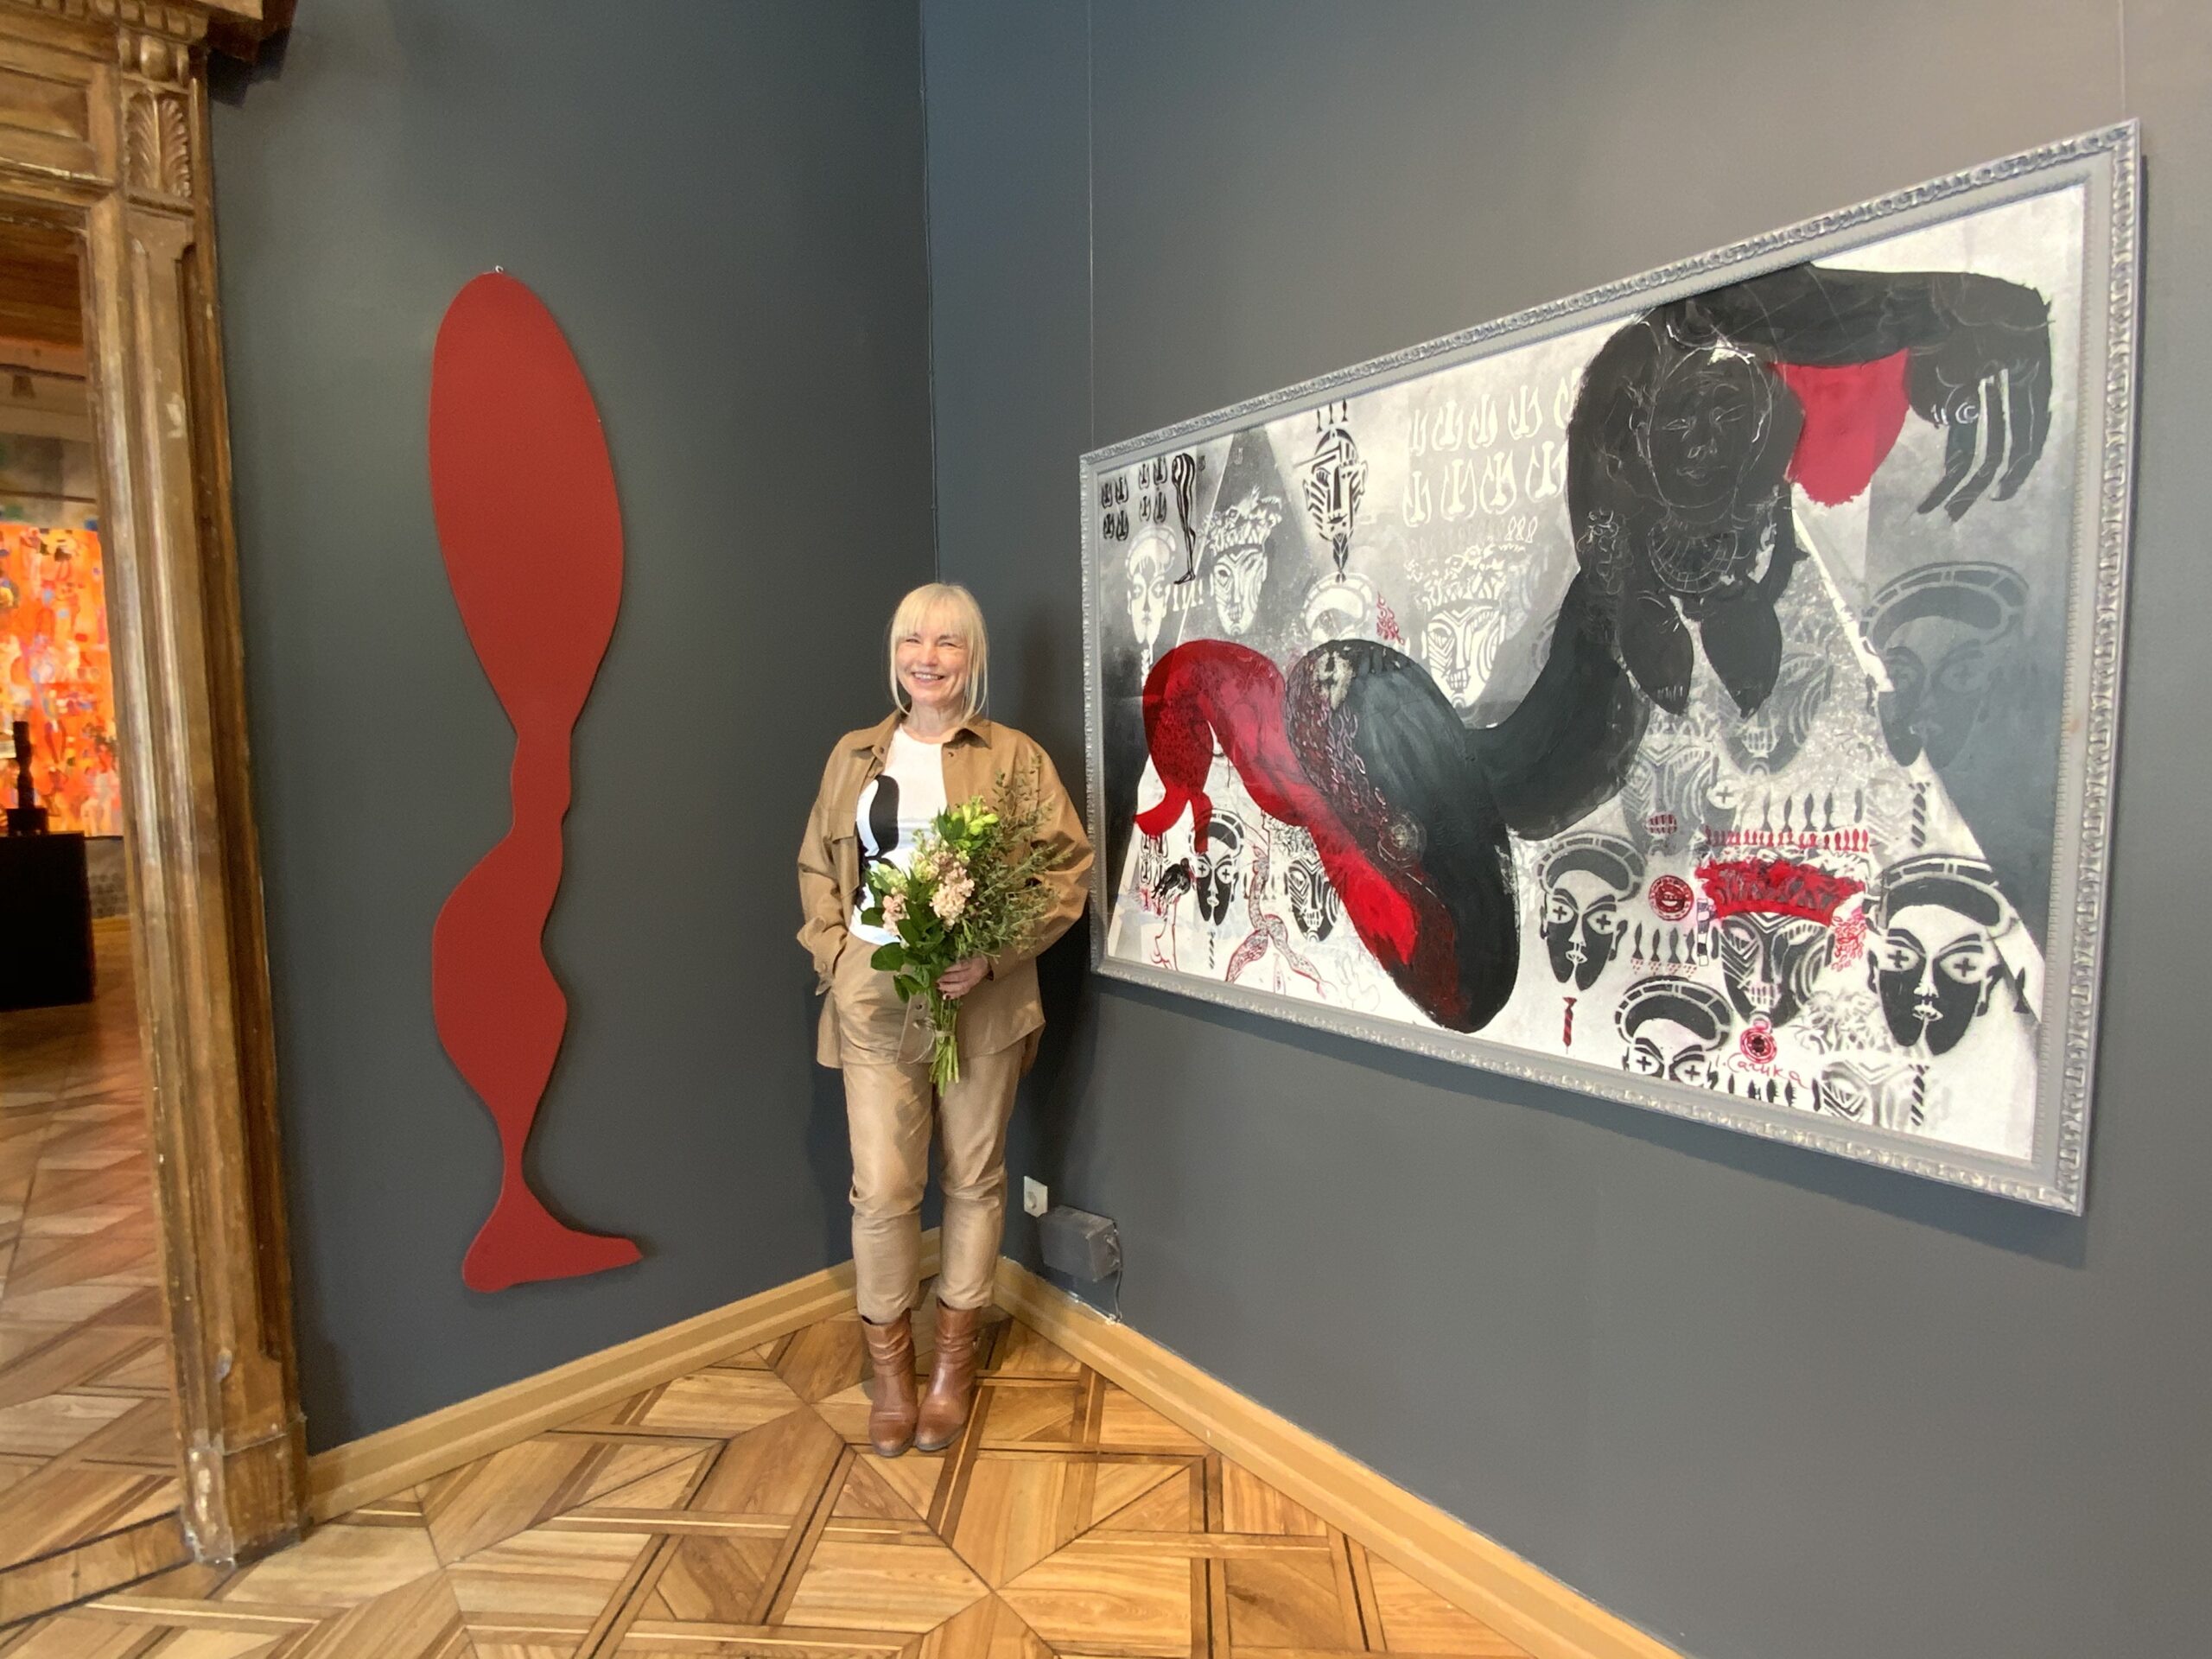 Solo exhibiton at Liepaja museum